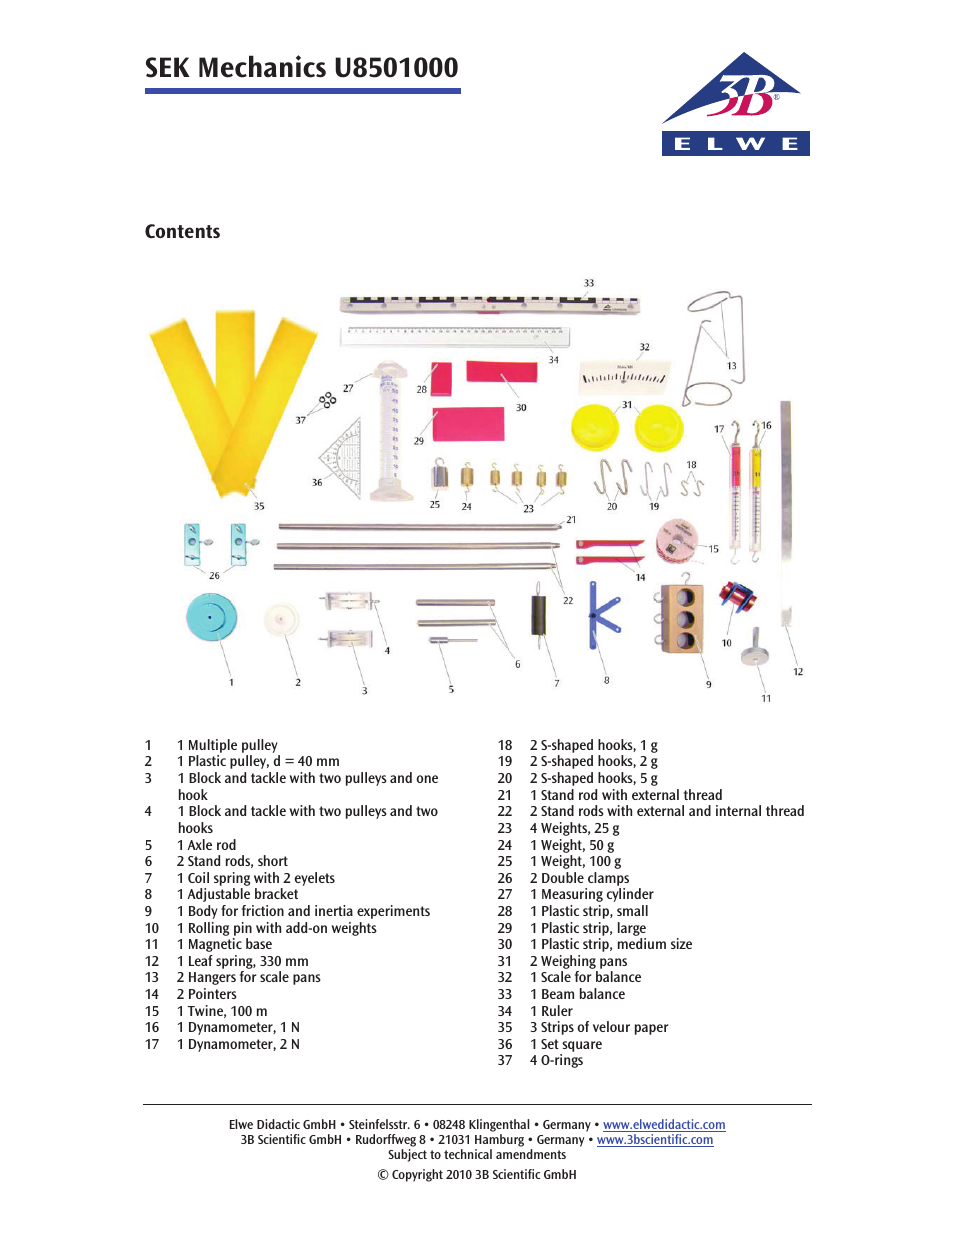 Advanced Mechanics Kit